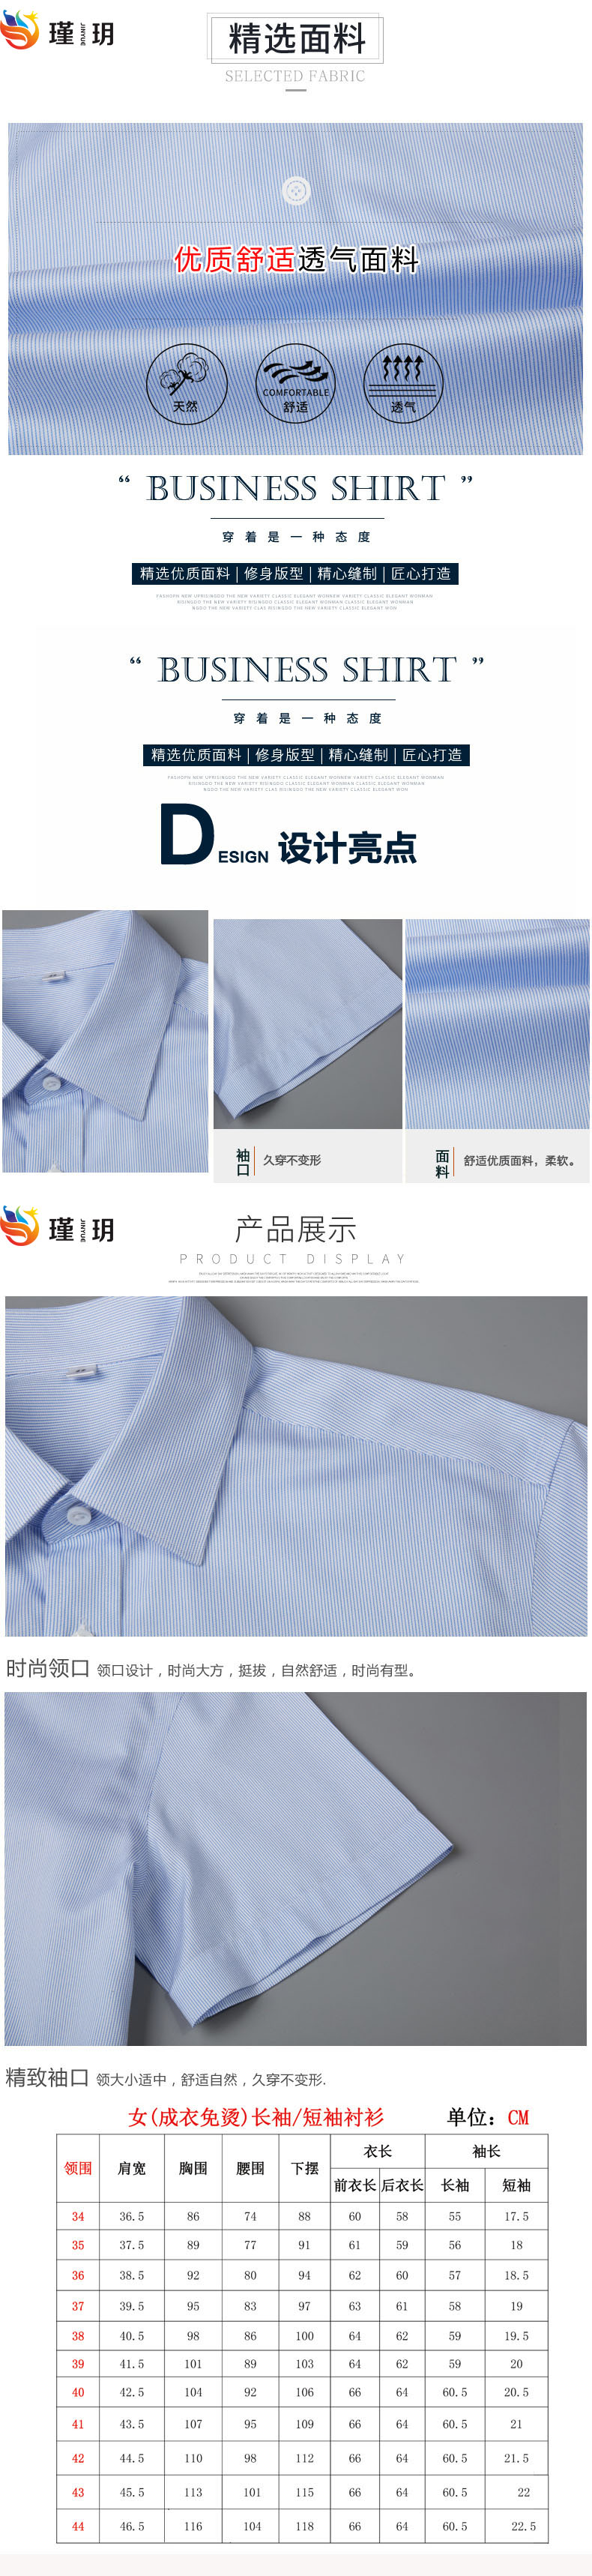 武汉定制衬衫,武汉衬衫厂,武汉衬衫加工(图2)